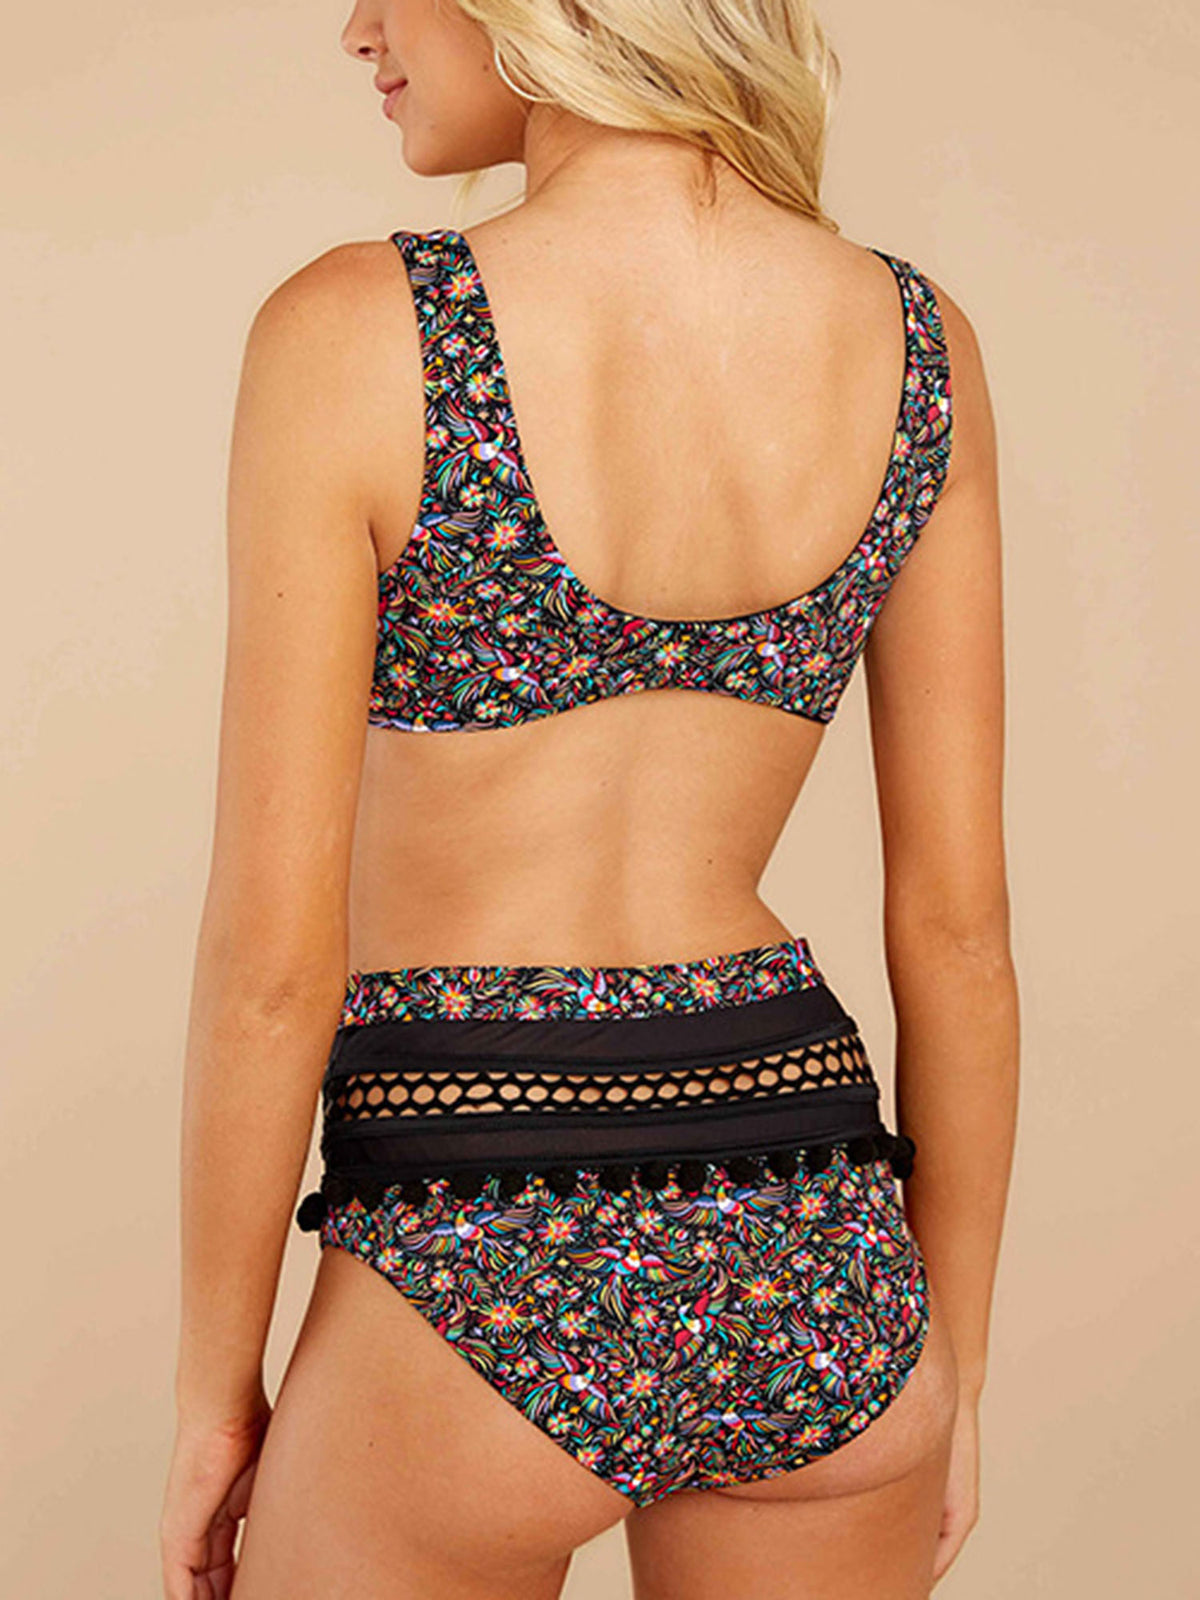 Cute Print Pom-Pom Front Tie High Waist Bikini Swimsuit HT20 - worthtryit.com